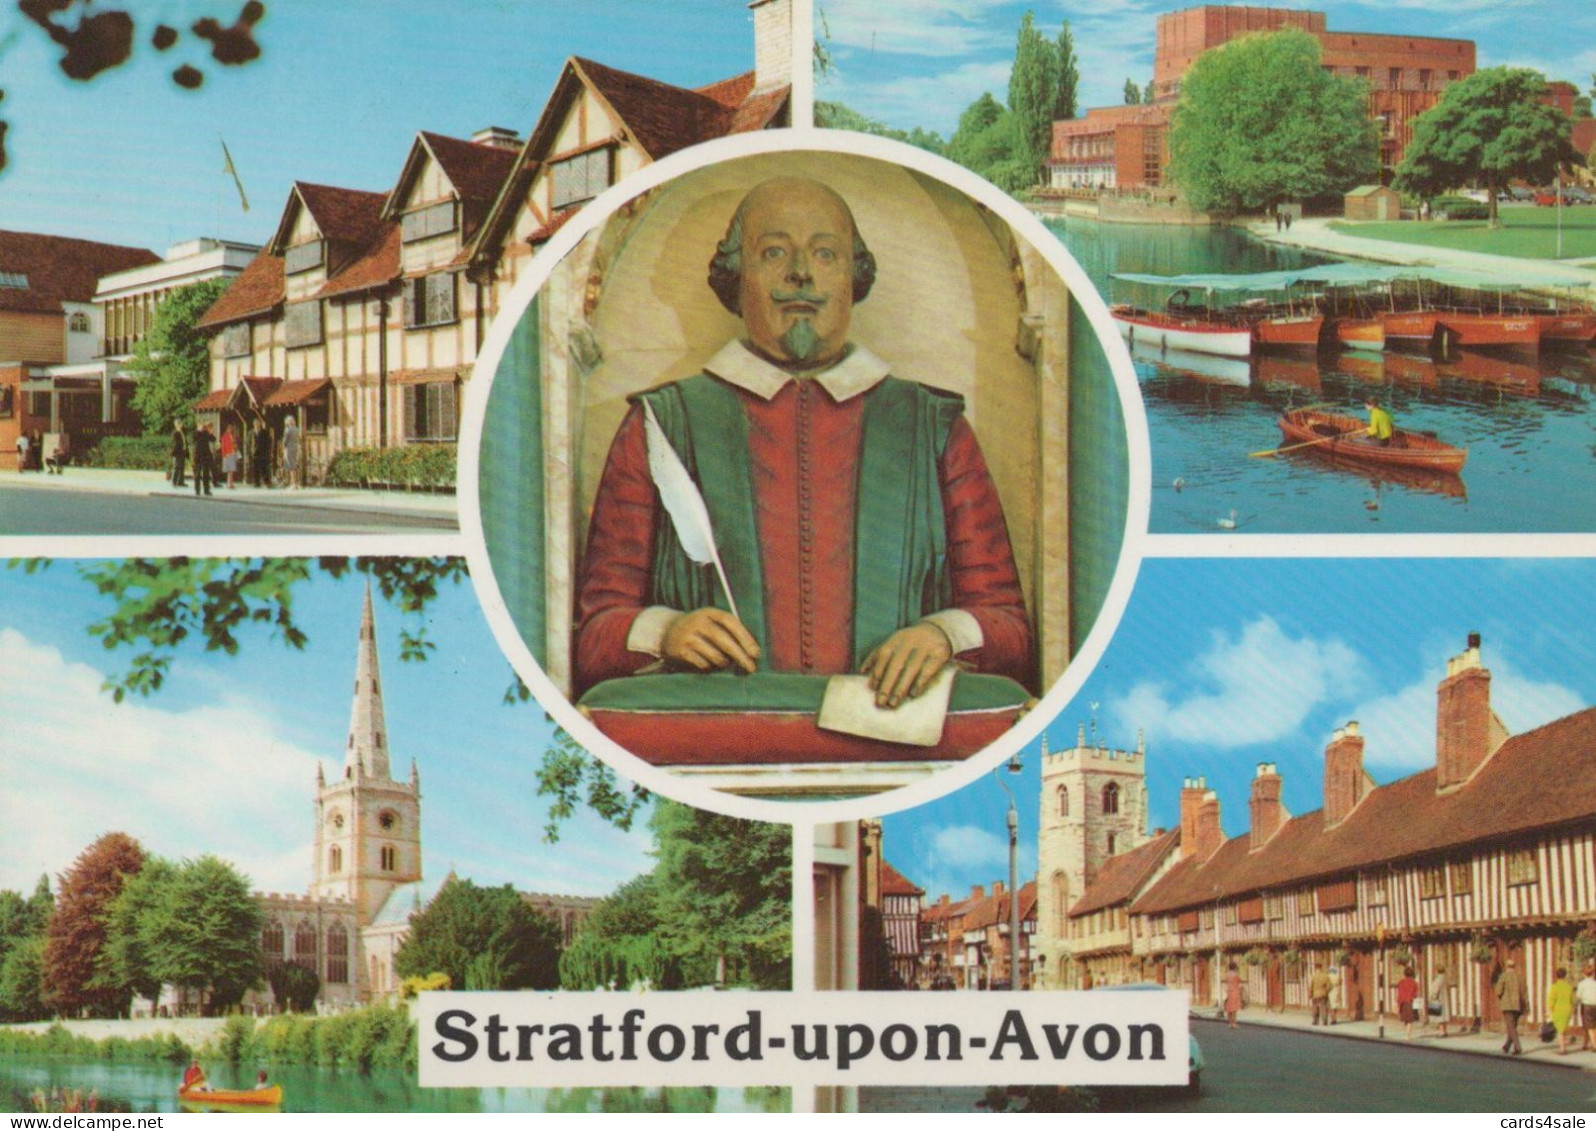 Stratford-upon-Avon - Stratford Upon Avon